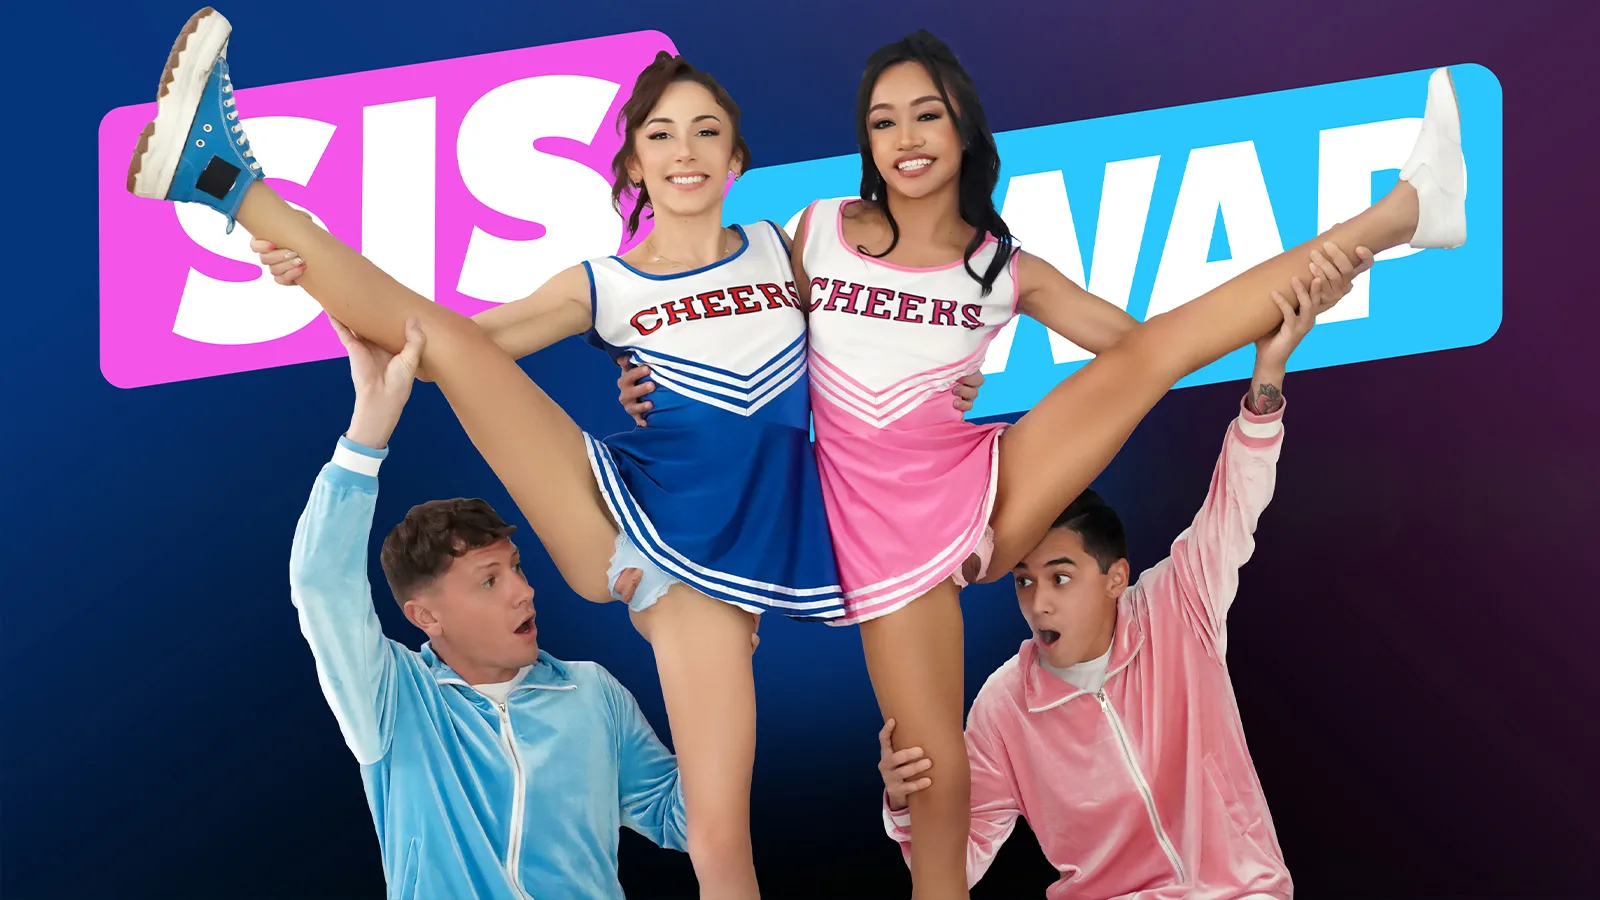 The Cheerleaders’ Plan - Sis Swap